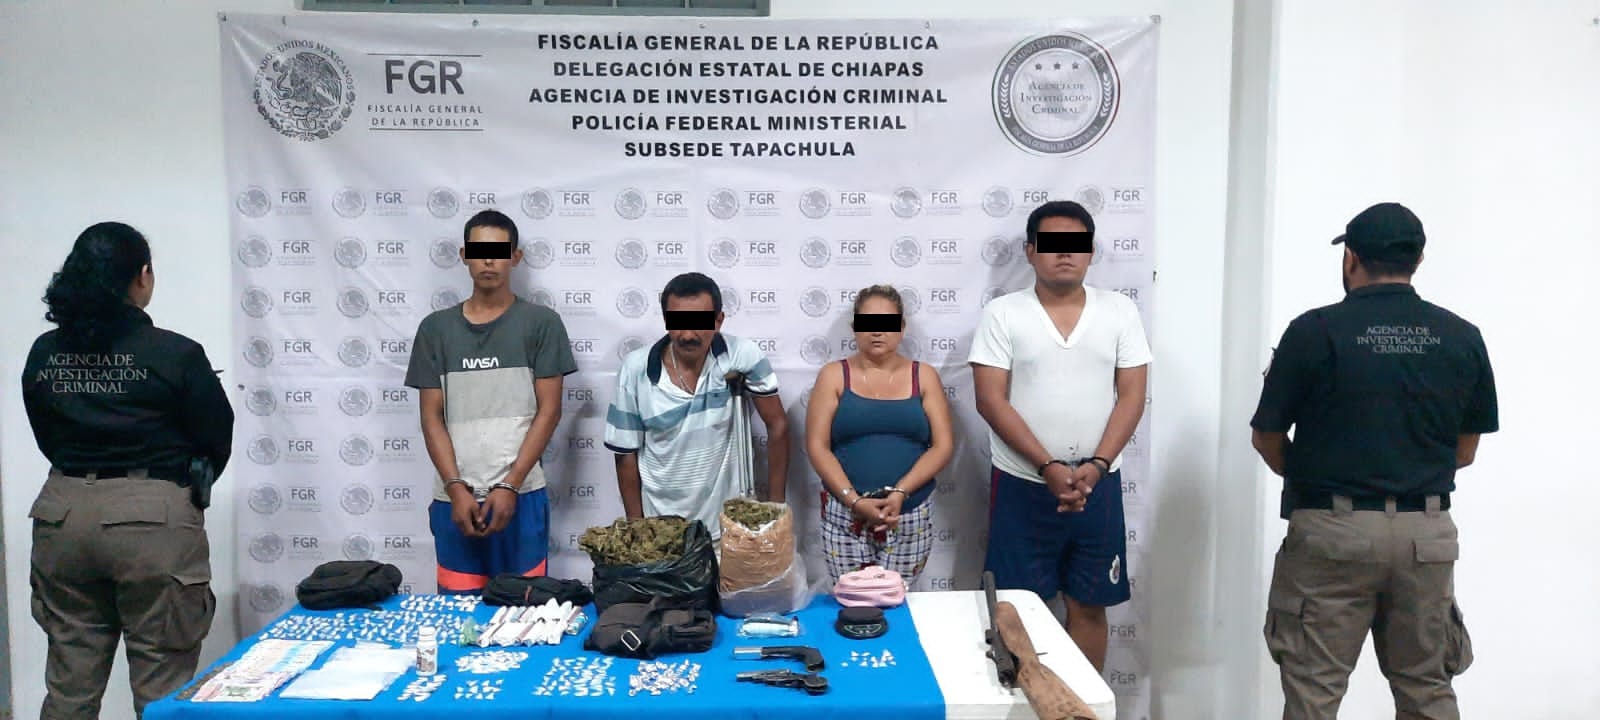 En cateo FGR aseguran cuatro personas,Narcóticoticos y armas en Chiapas